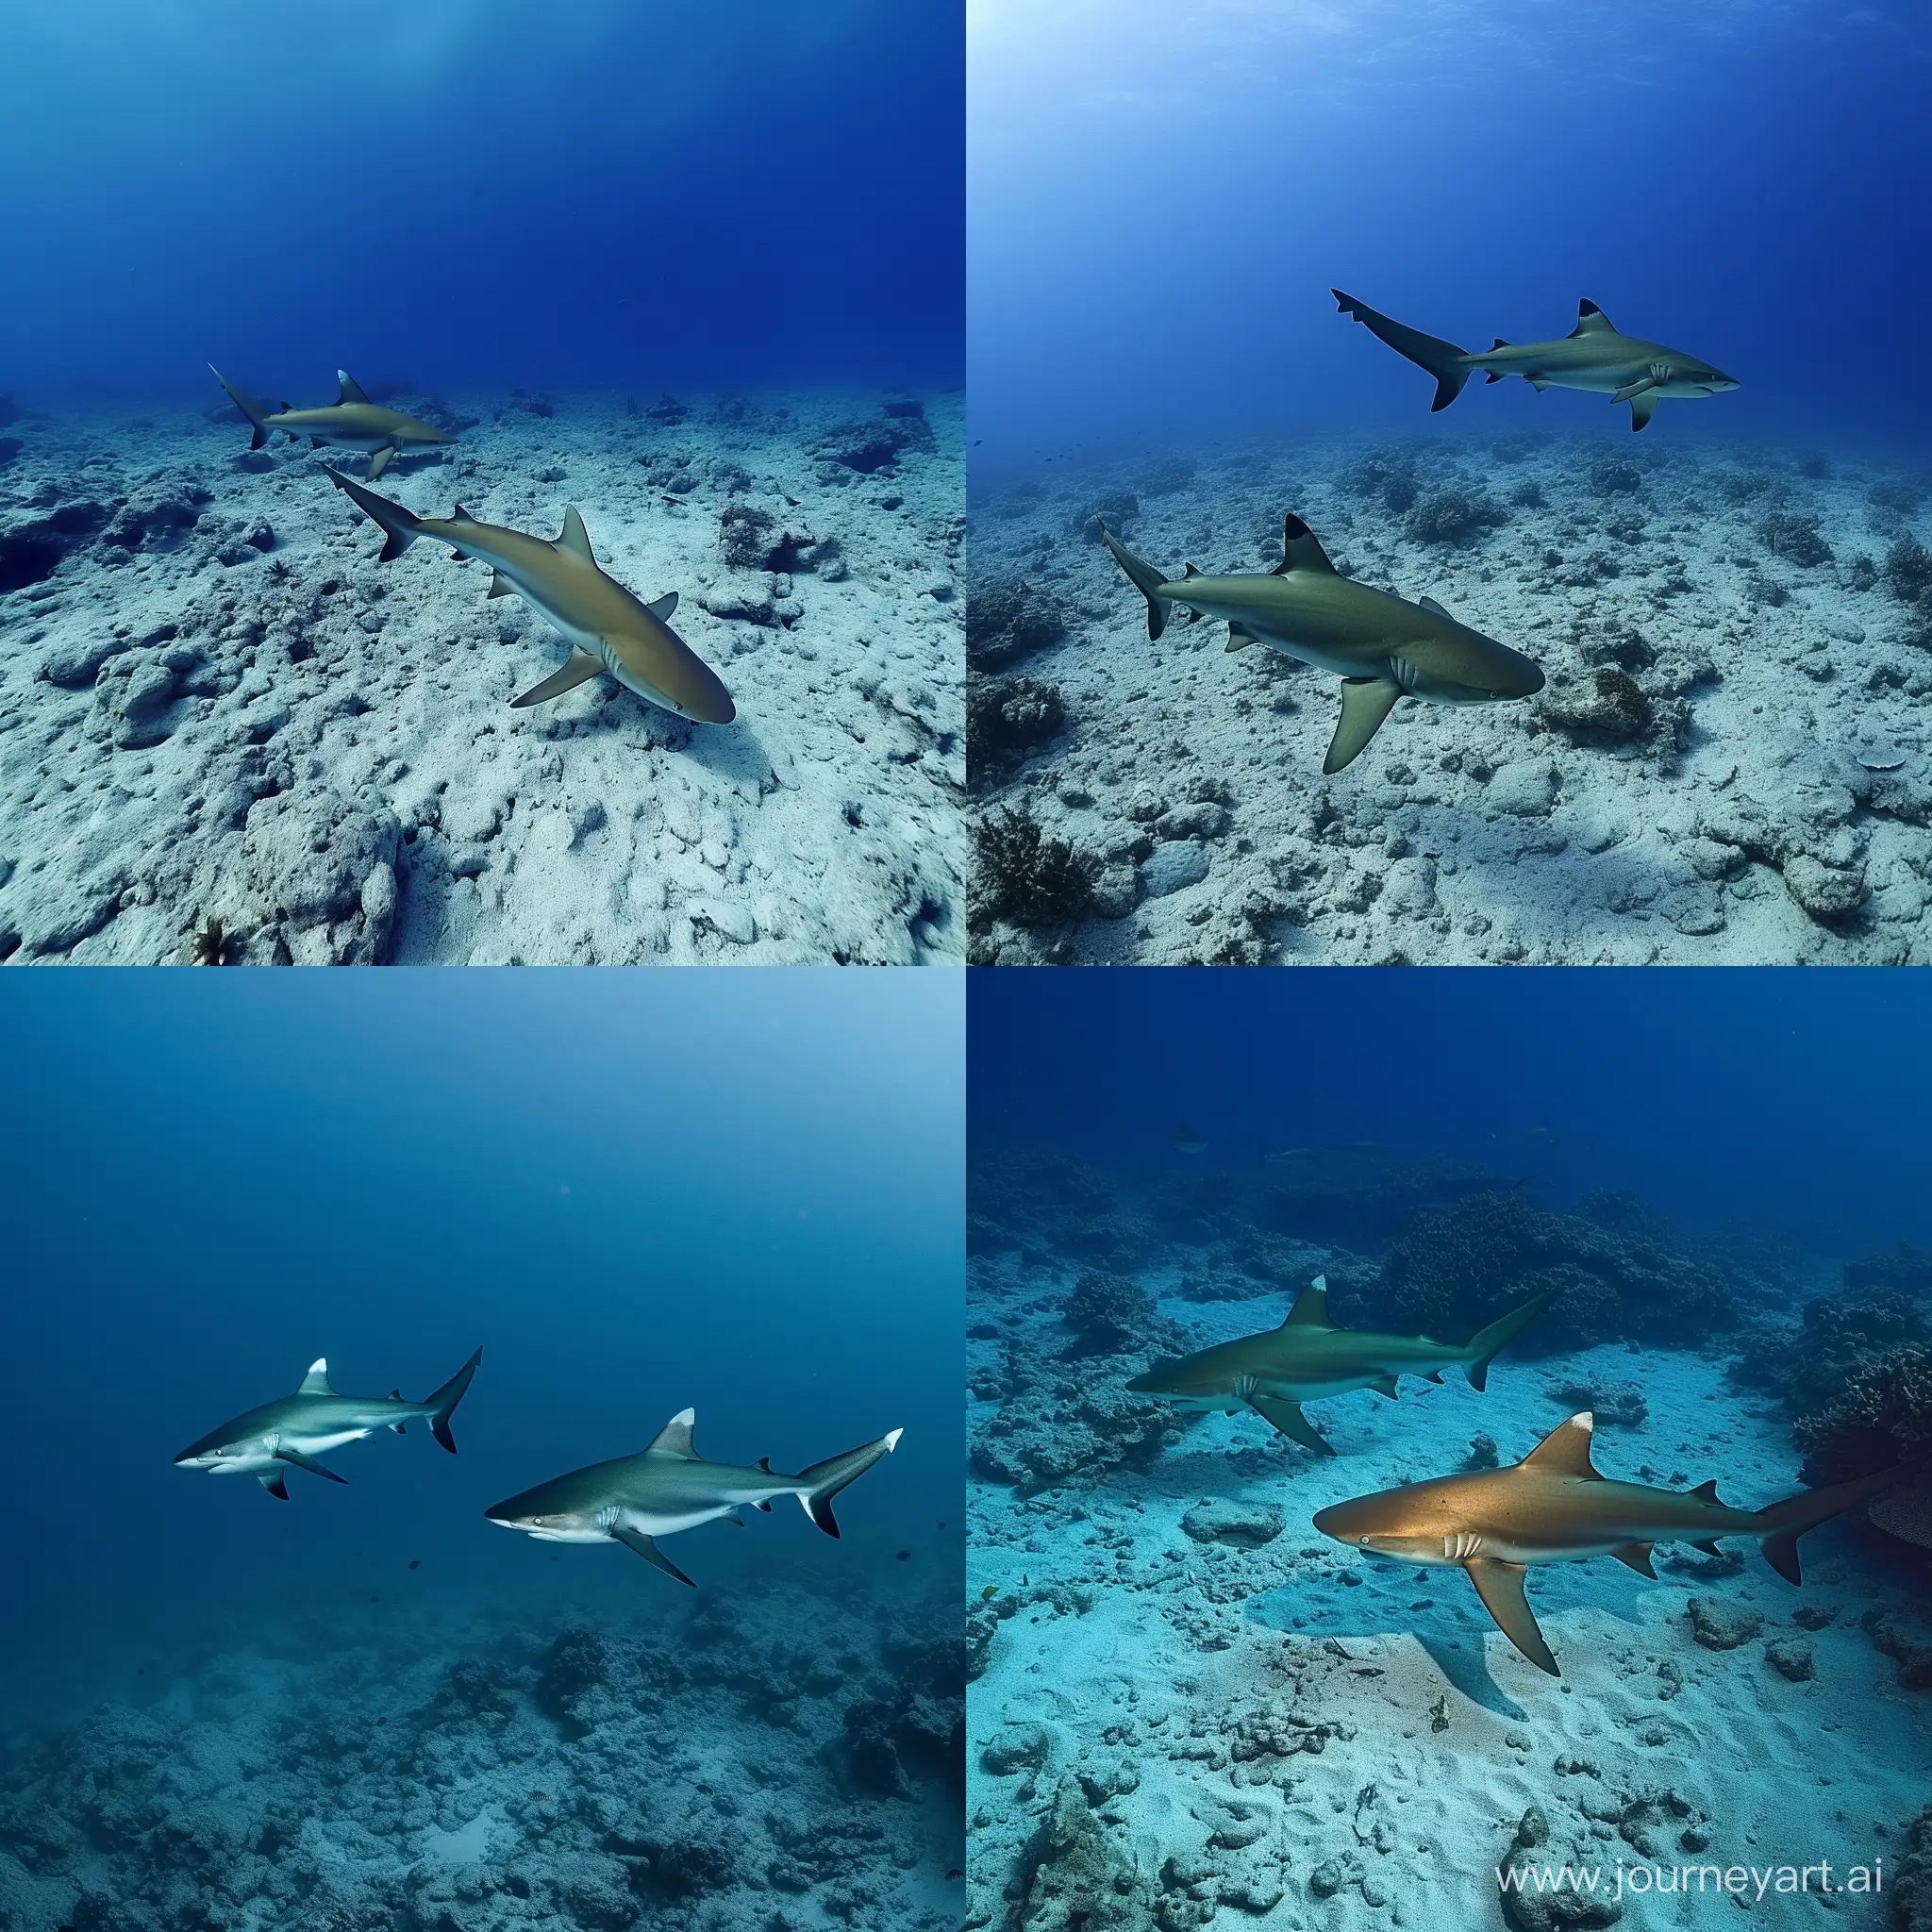 Majestic-DeepSea-Encounter-Two-Sharks-Roaming-in-Crystal-Clear-4K-Waters